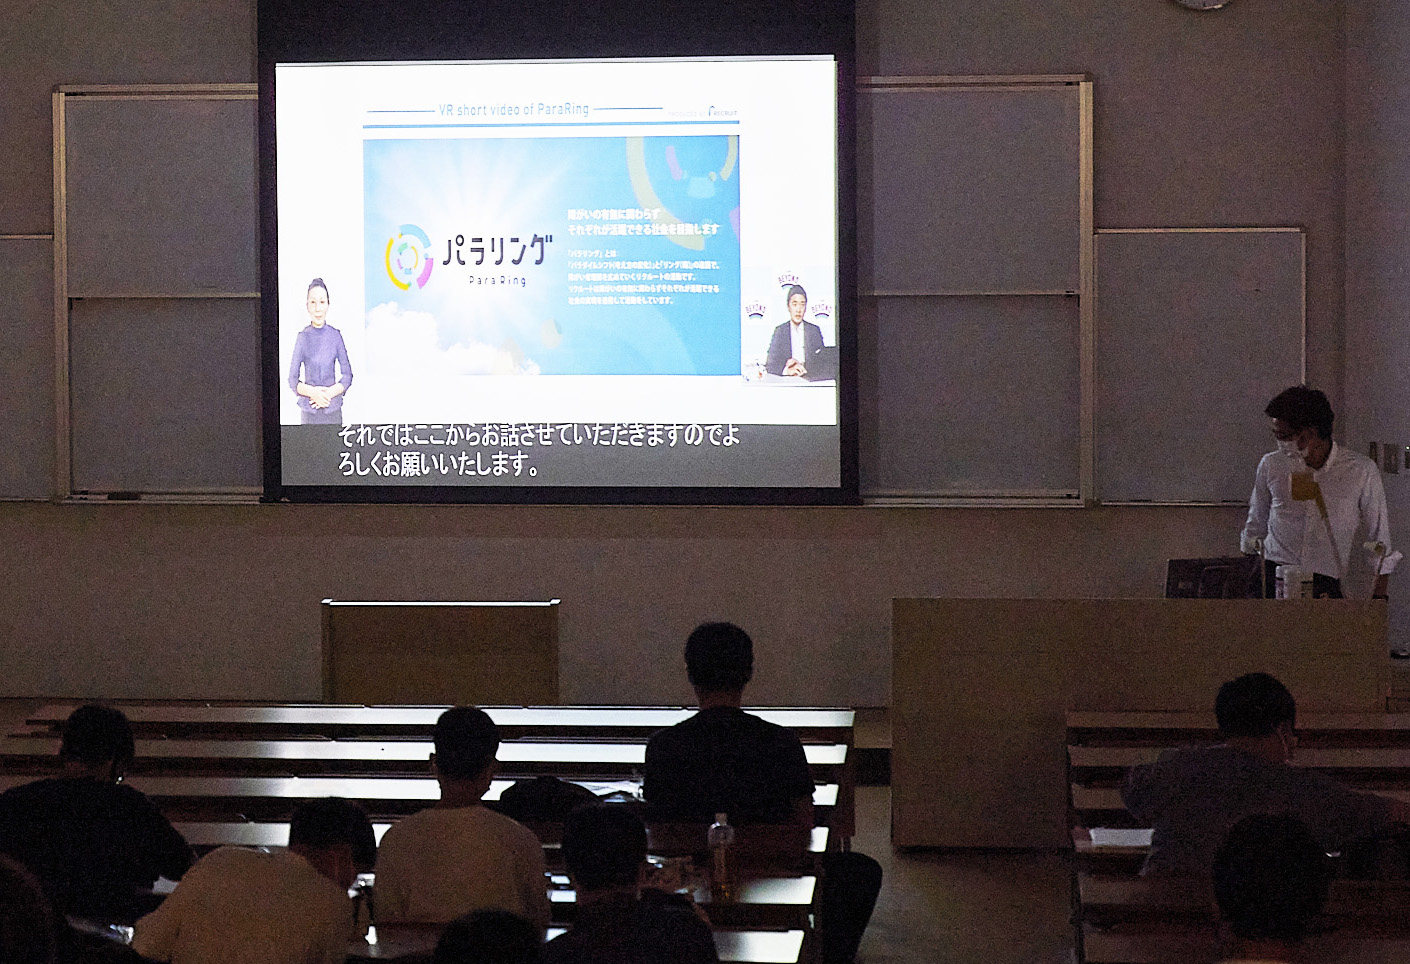 パラスポーツVR体験,浦和大学の授業風景